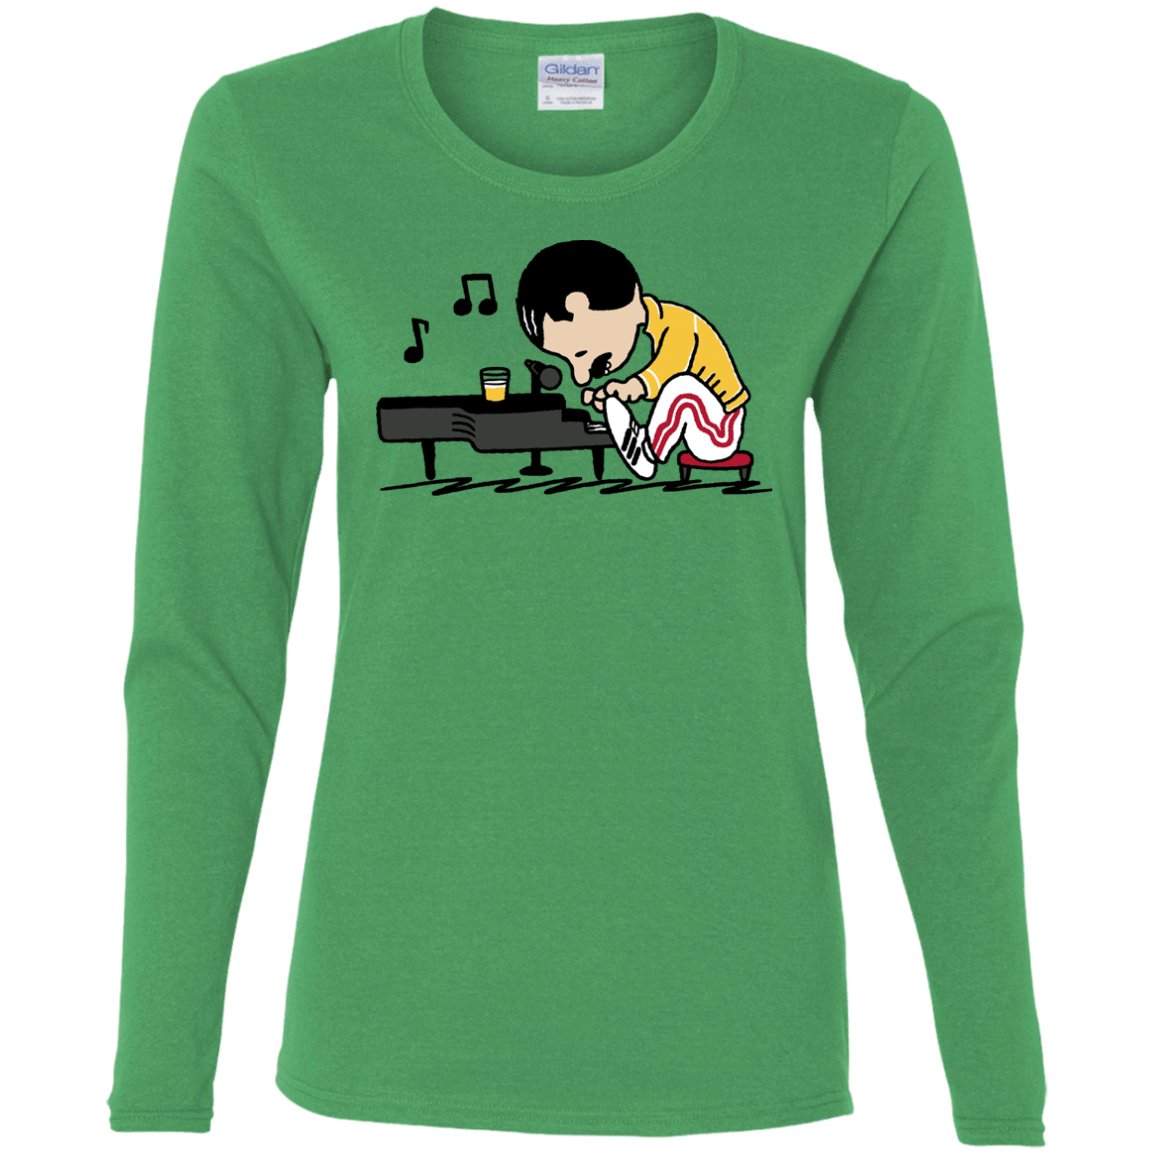 T-Shirts Irish Green / S Queenuts Women's Long Sleeve T-Shirt